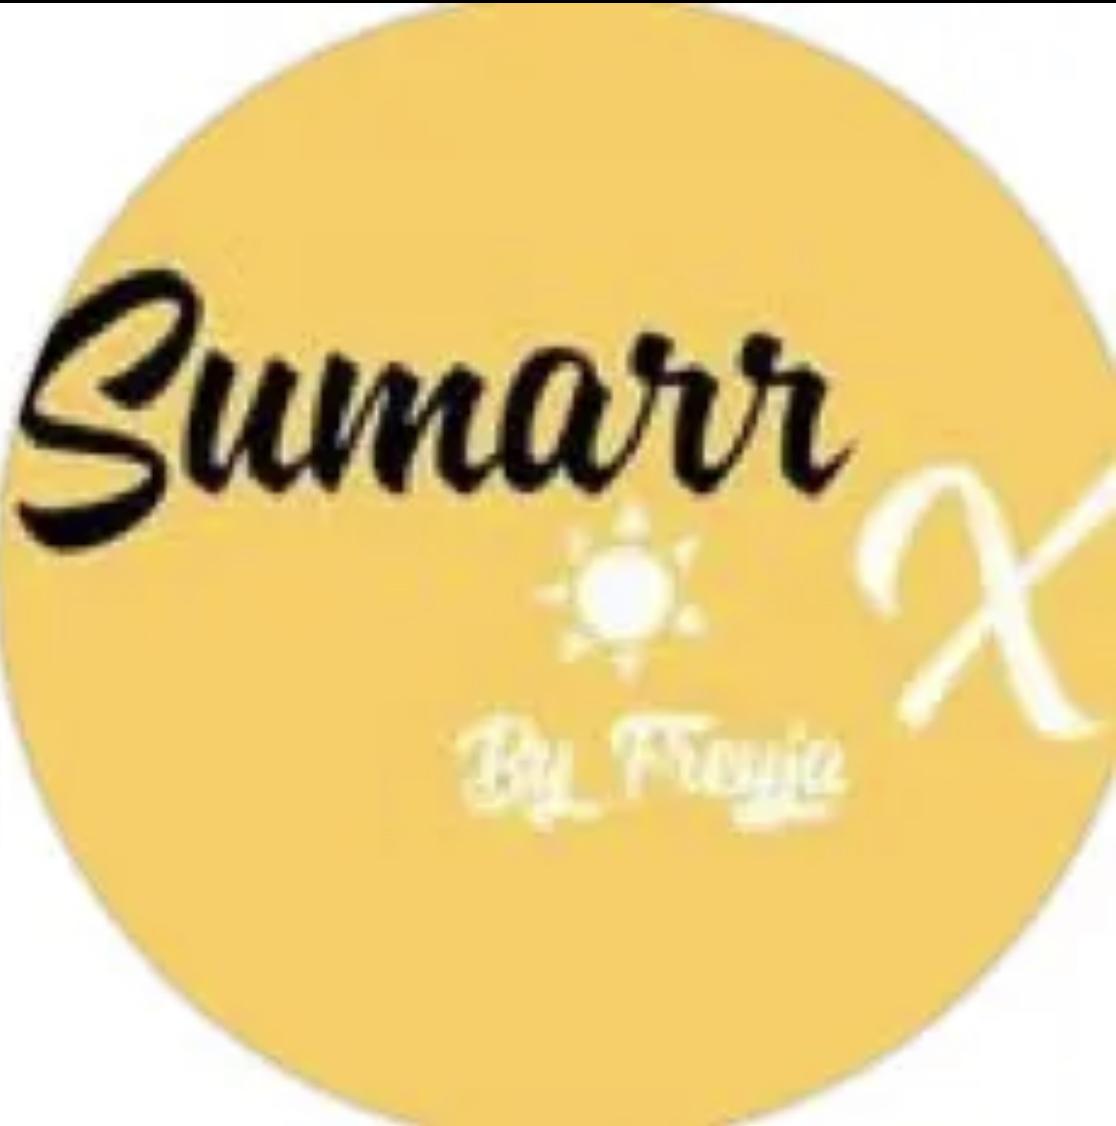 Sumarr.designs 's images